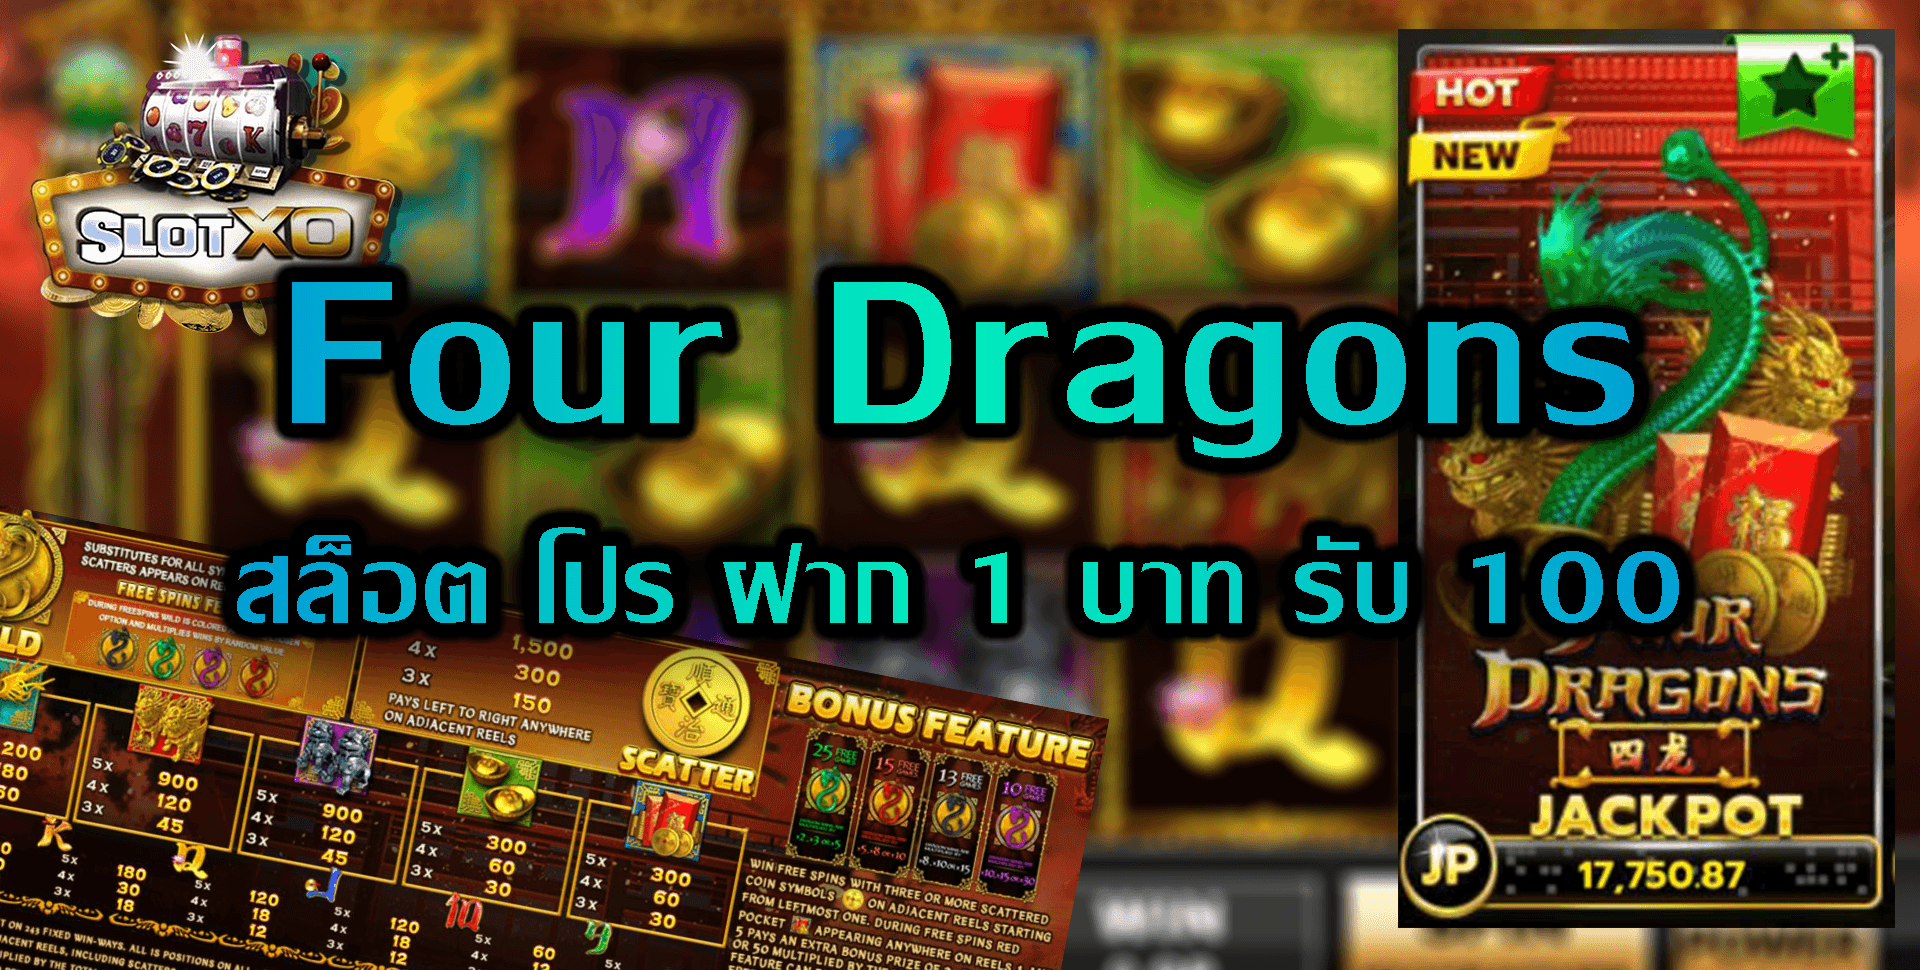 Slotxo-Slot xo-Four-Dragons-5